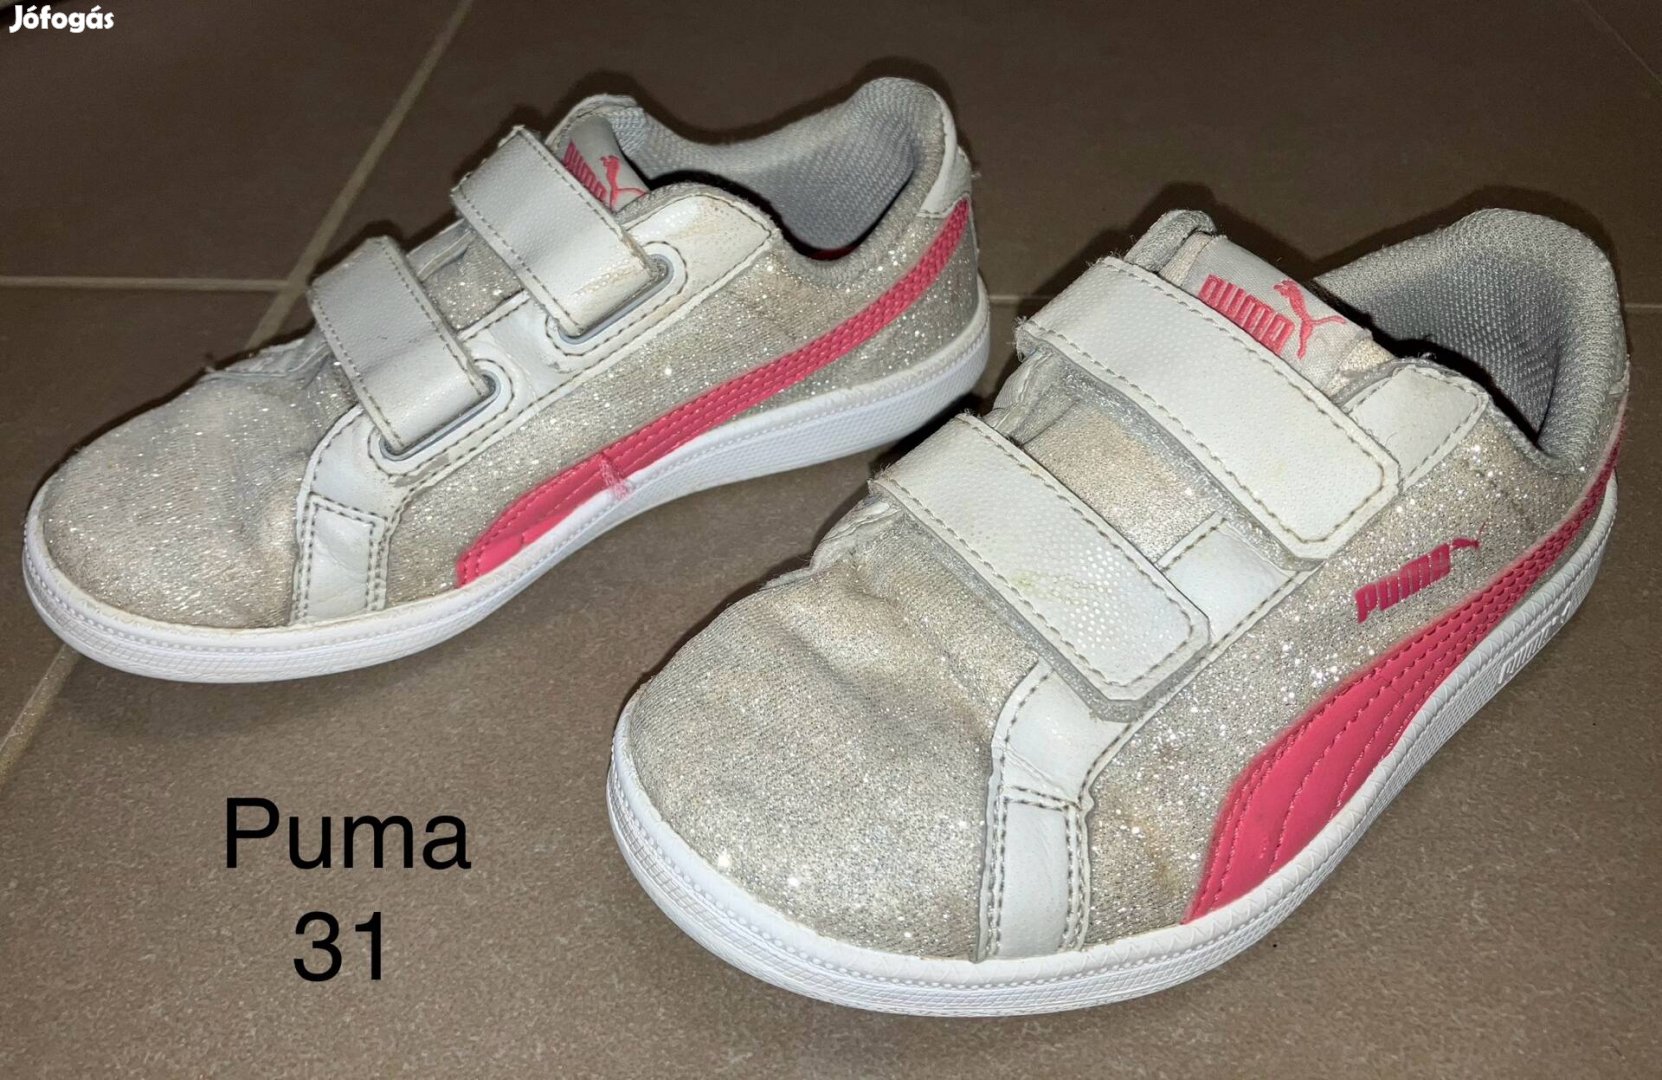 Puma 31 cipő UK12, US13C; kislány tavaszi sneaker 31